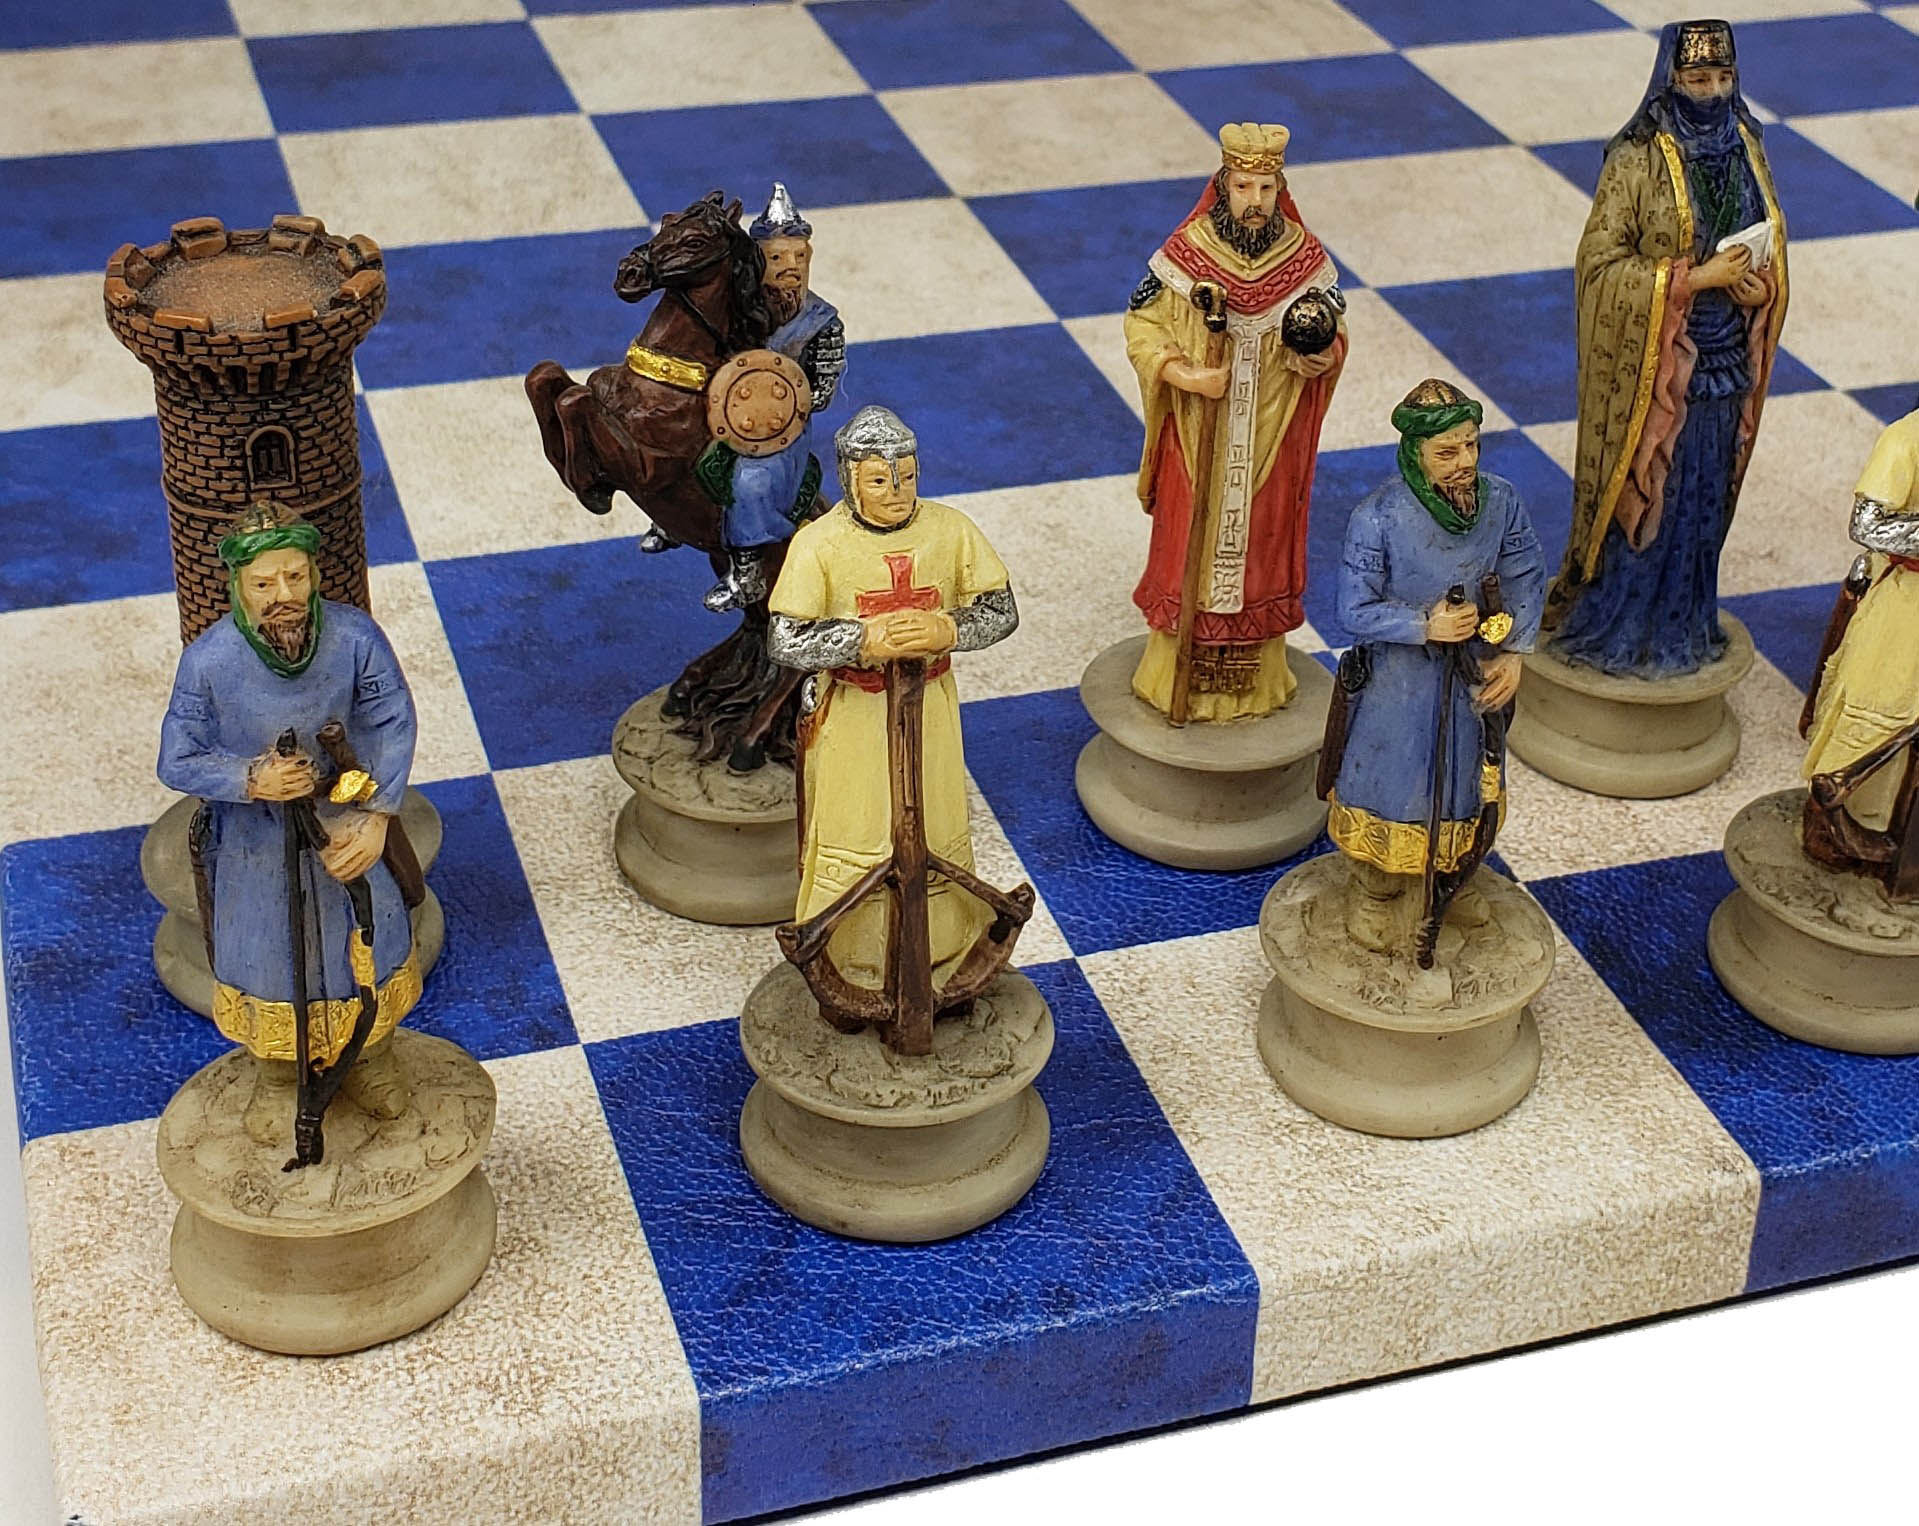 チェスセット HPL Medieval Times Crusades Chess Men Set Arabians Vs Christians  Crusade NO Board チェス